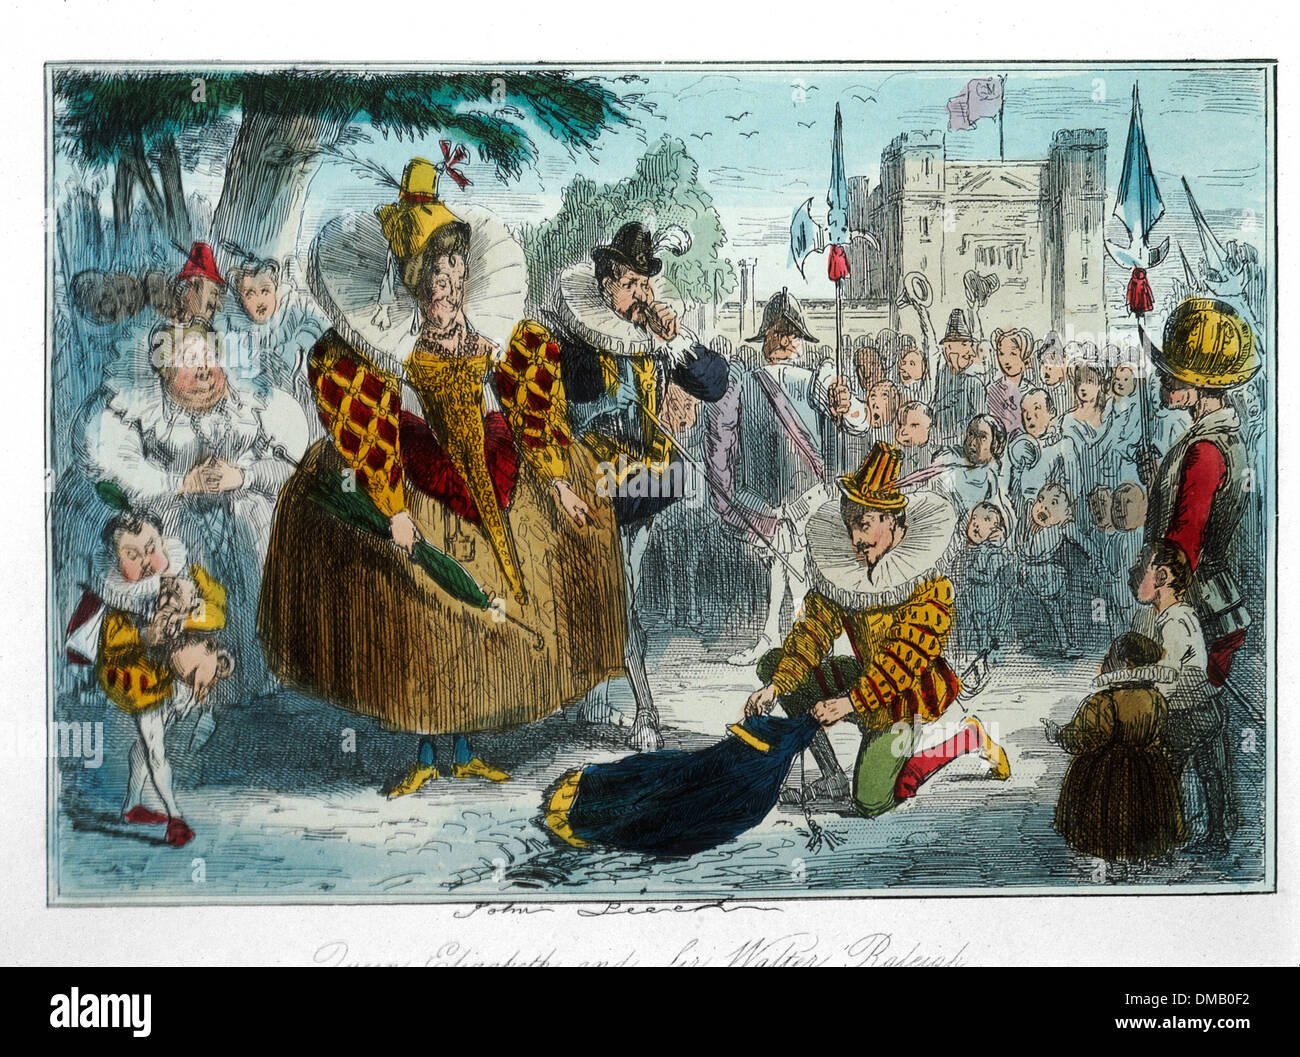 La reine Elizabeth et Sir Walter Raleigh, bande dessinée Histoire de l'Angleterre, gravure couleur par John Leech, 1850 Banque D'Images